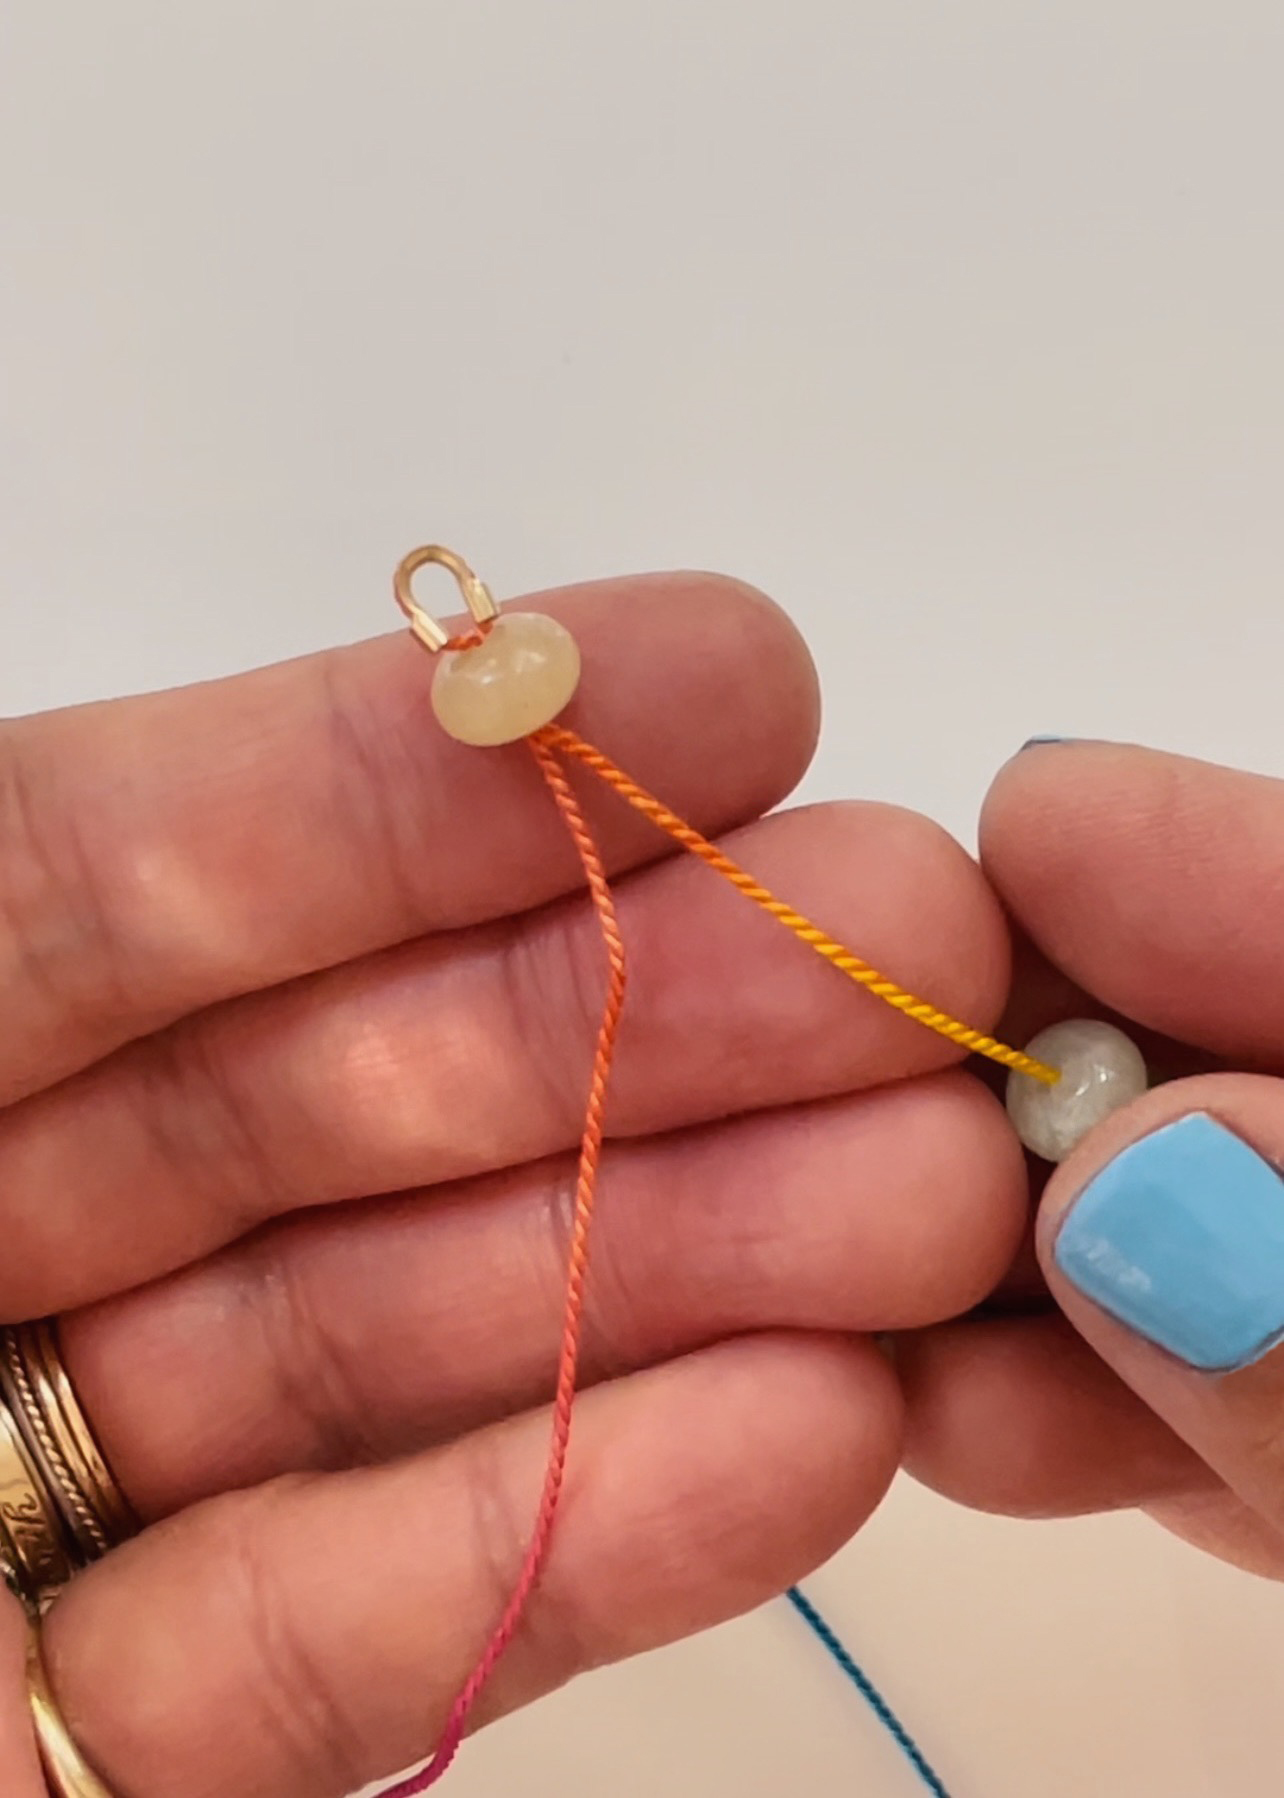 Silk Thread - Beading Thread - Cord Wire Chain